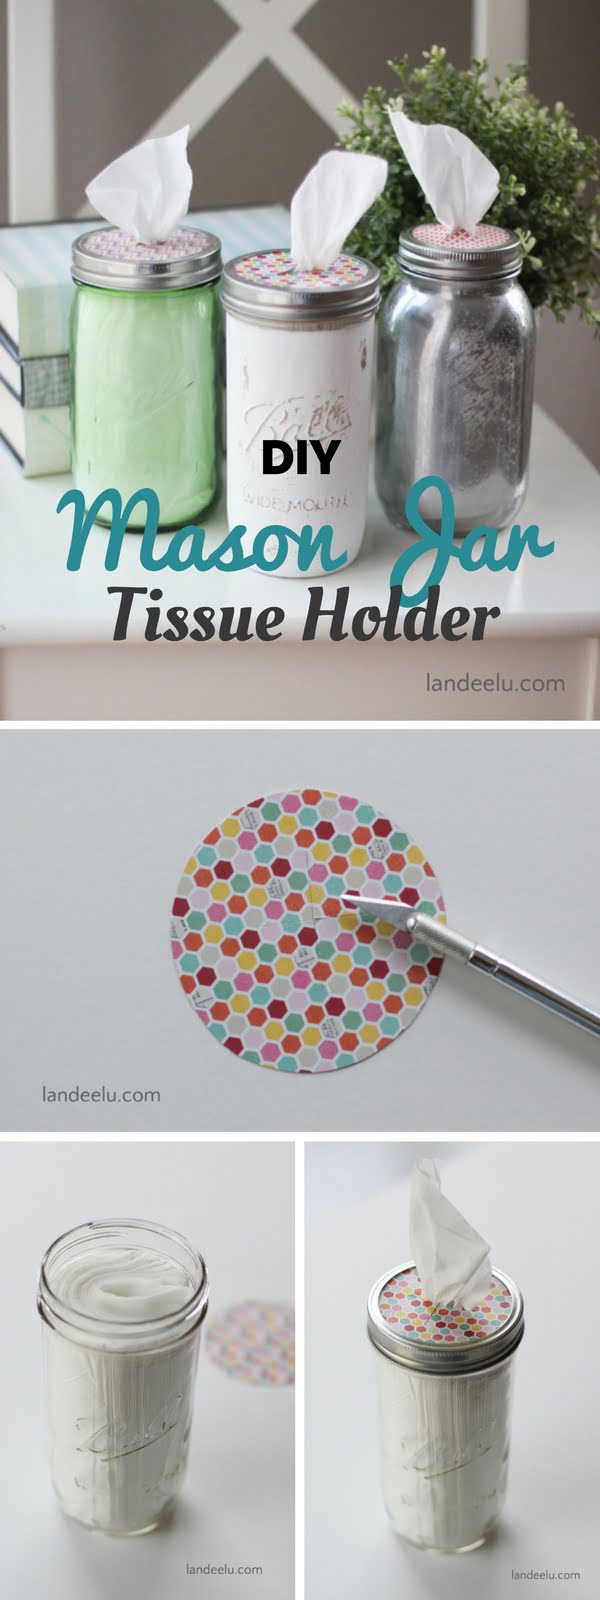 DIY Tissue Holder